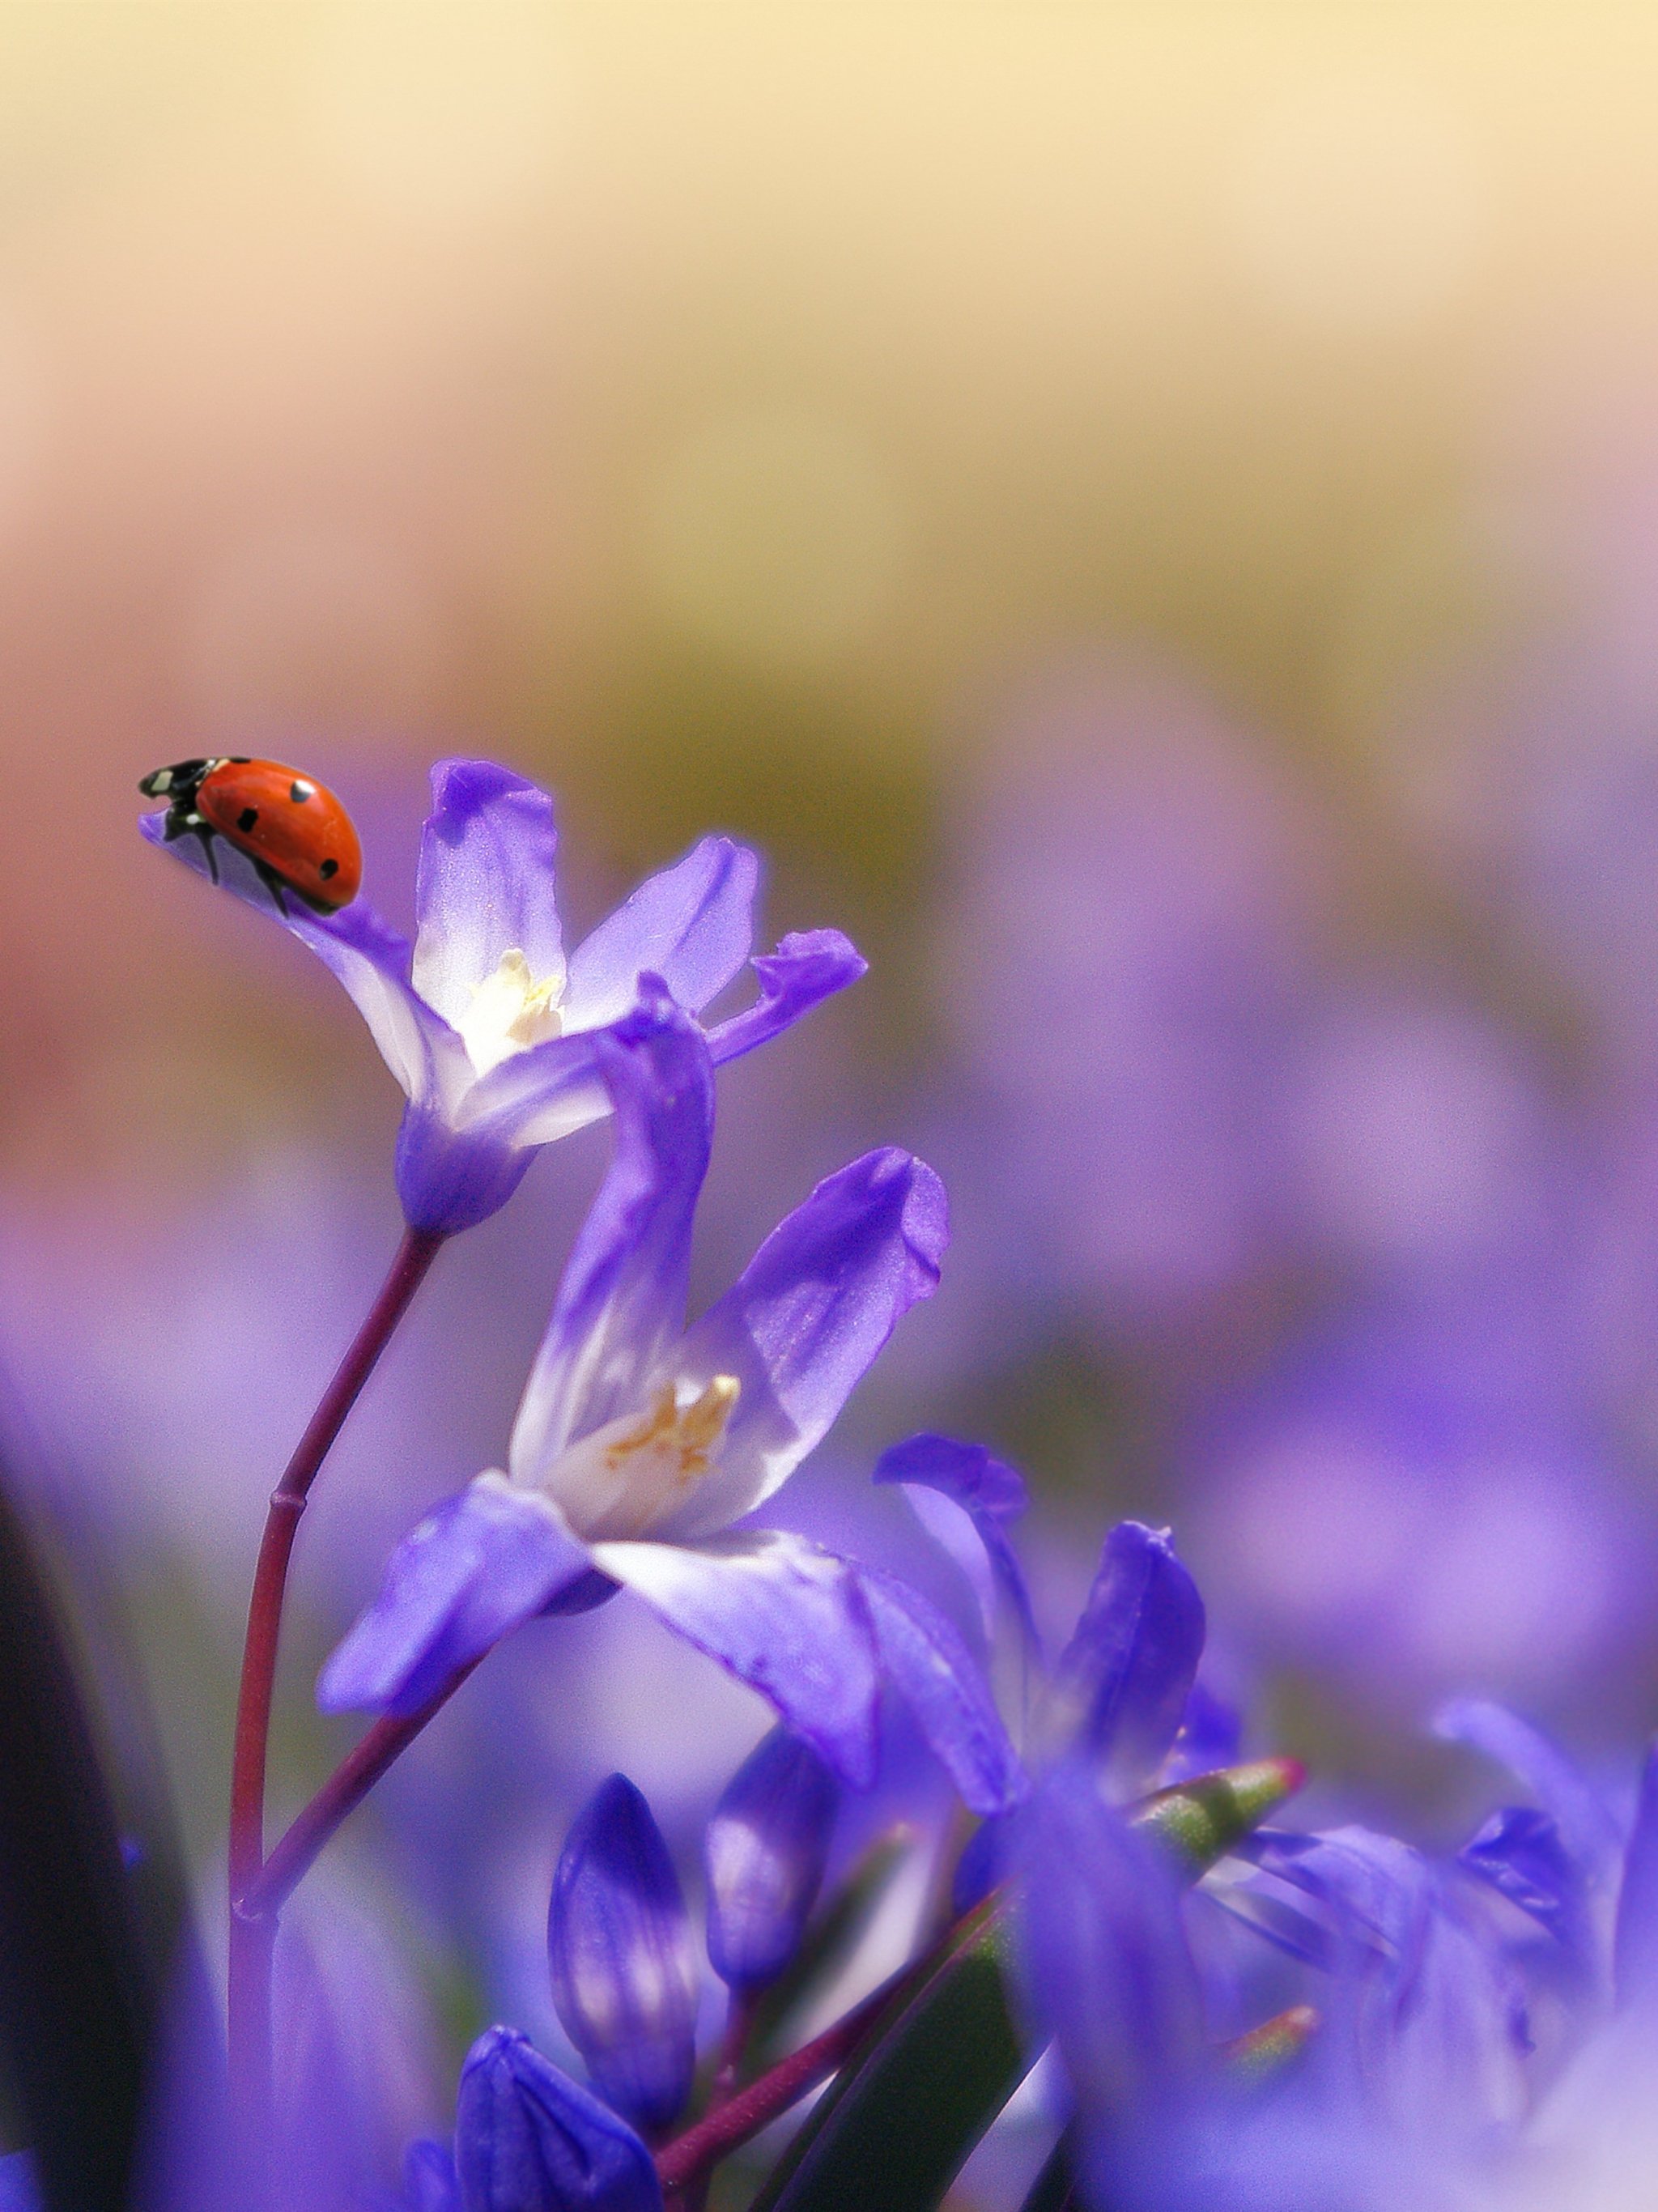 Ladybug on Purple Flower Wallpaper - Mobile & Desktop Background